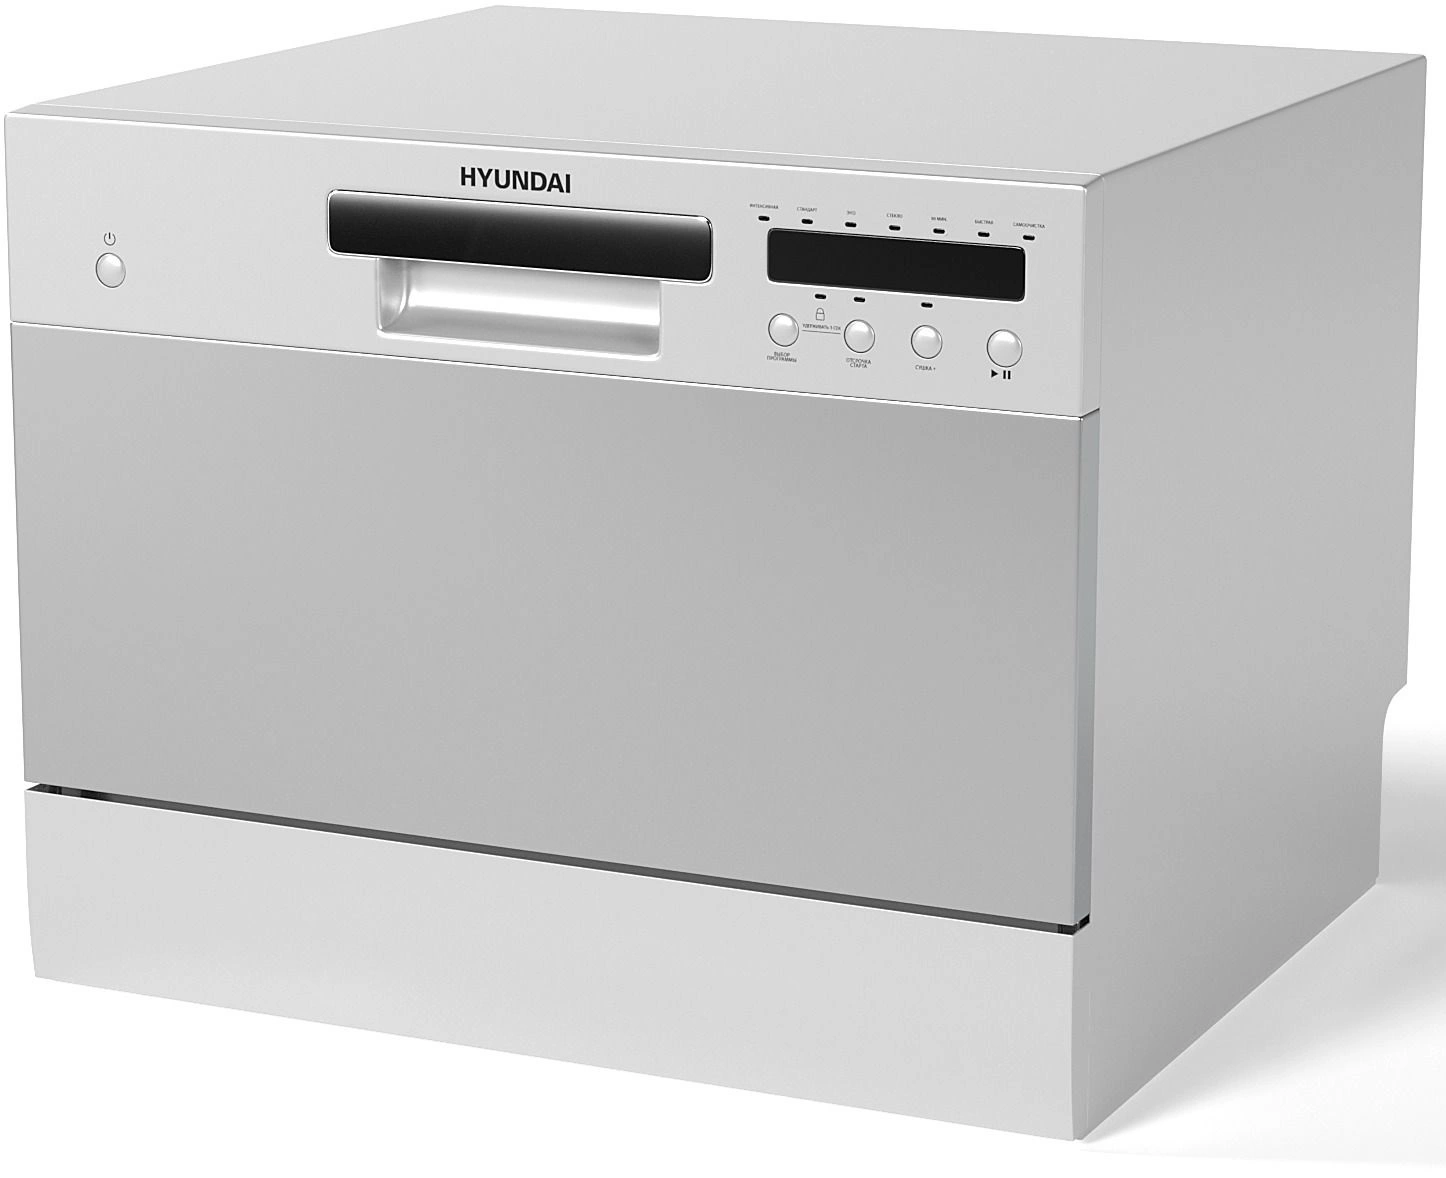 Посудомоечная машина компактная Hyundai DT301, серый (DT301)